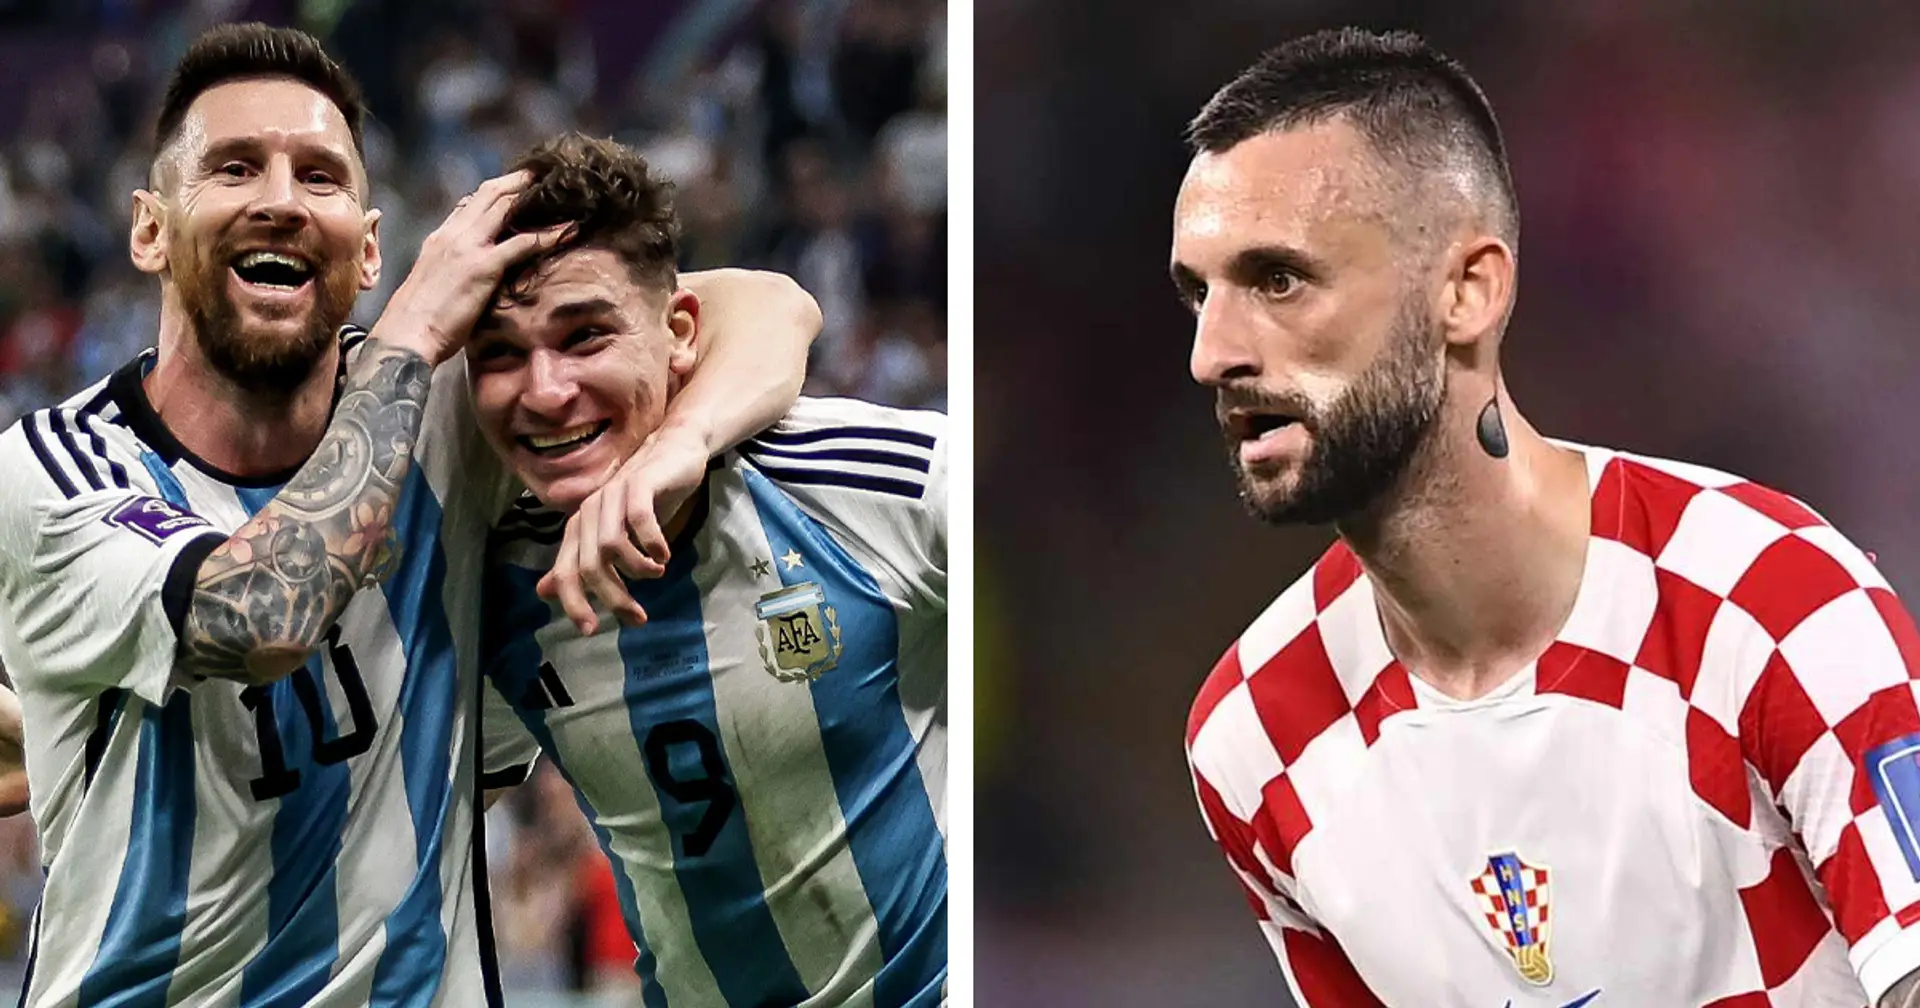 FLASH| L'Argentina vola in Finale battendo 3-0 la Croazia: il nerazzurro Brozovic torna a casa